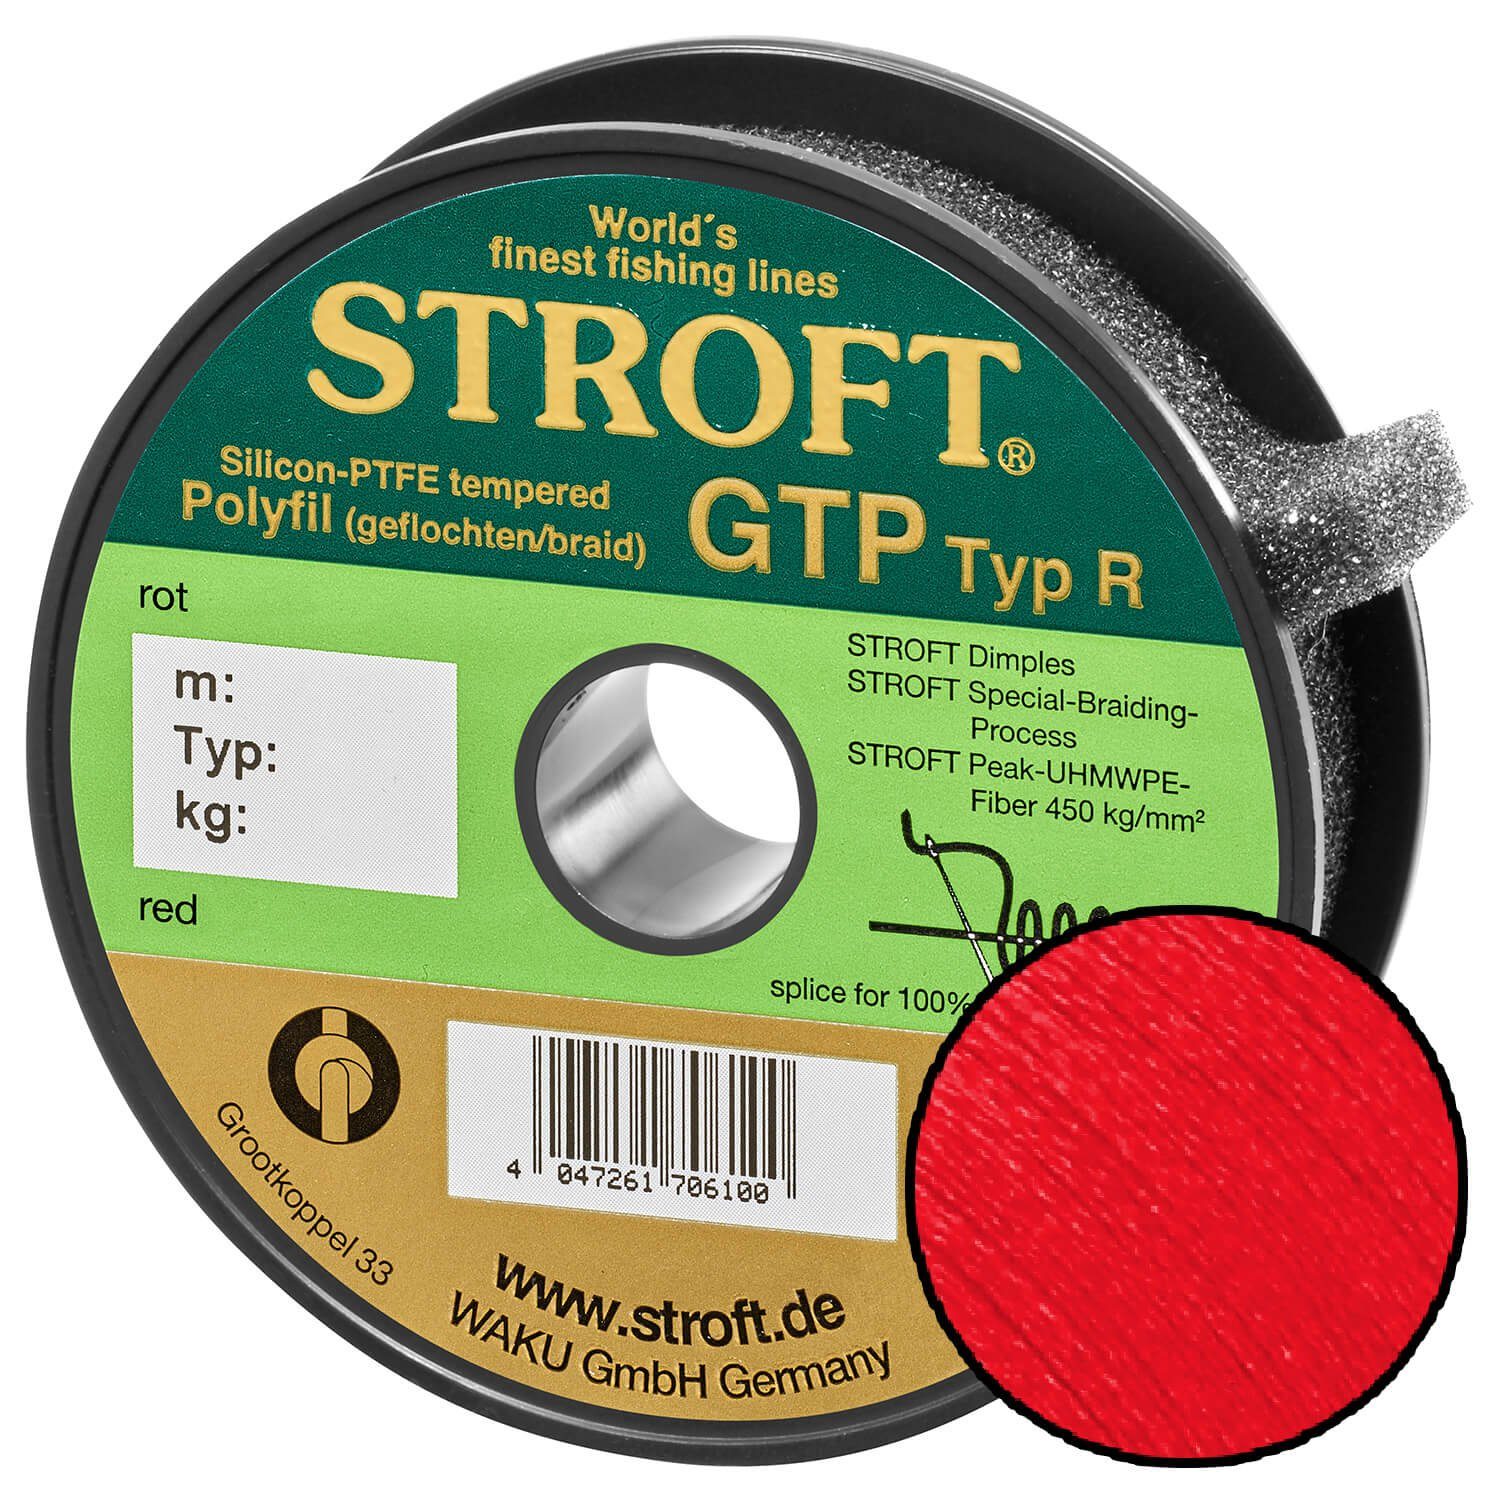 Stroft Angelschnur STROFT GTP Typ R Geflochtene Angelschnur 200m rot, 200 m Länge, 0.18 mm Fadendurchmesser, (1-St), 5.5kg Tragkraft